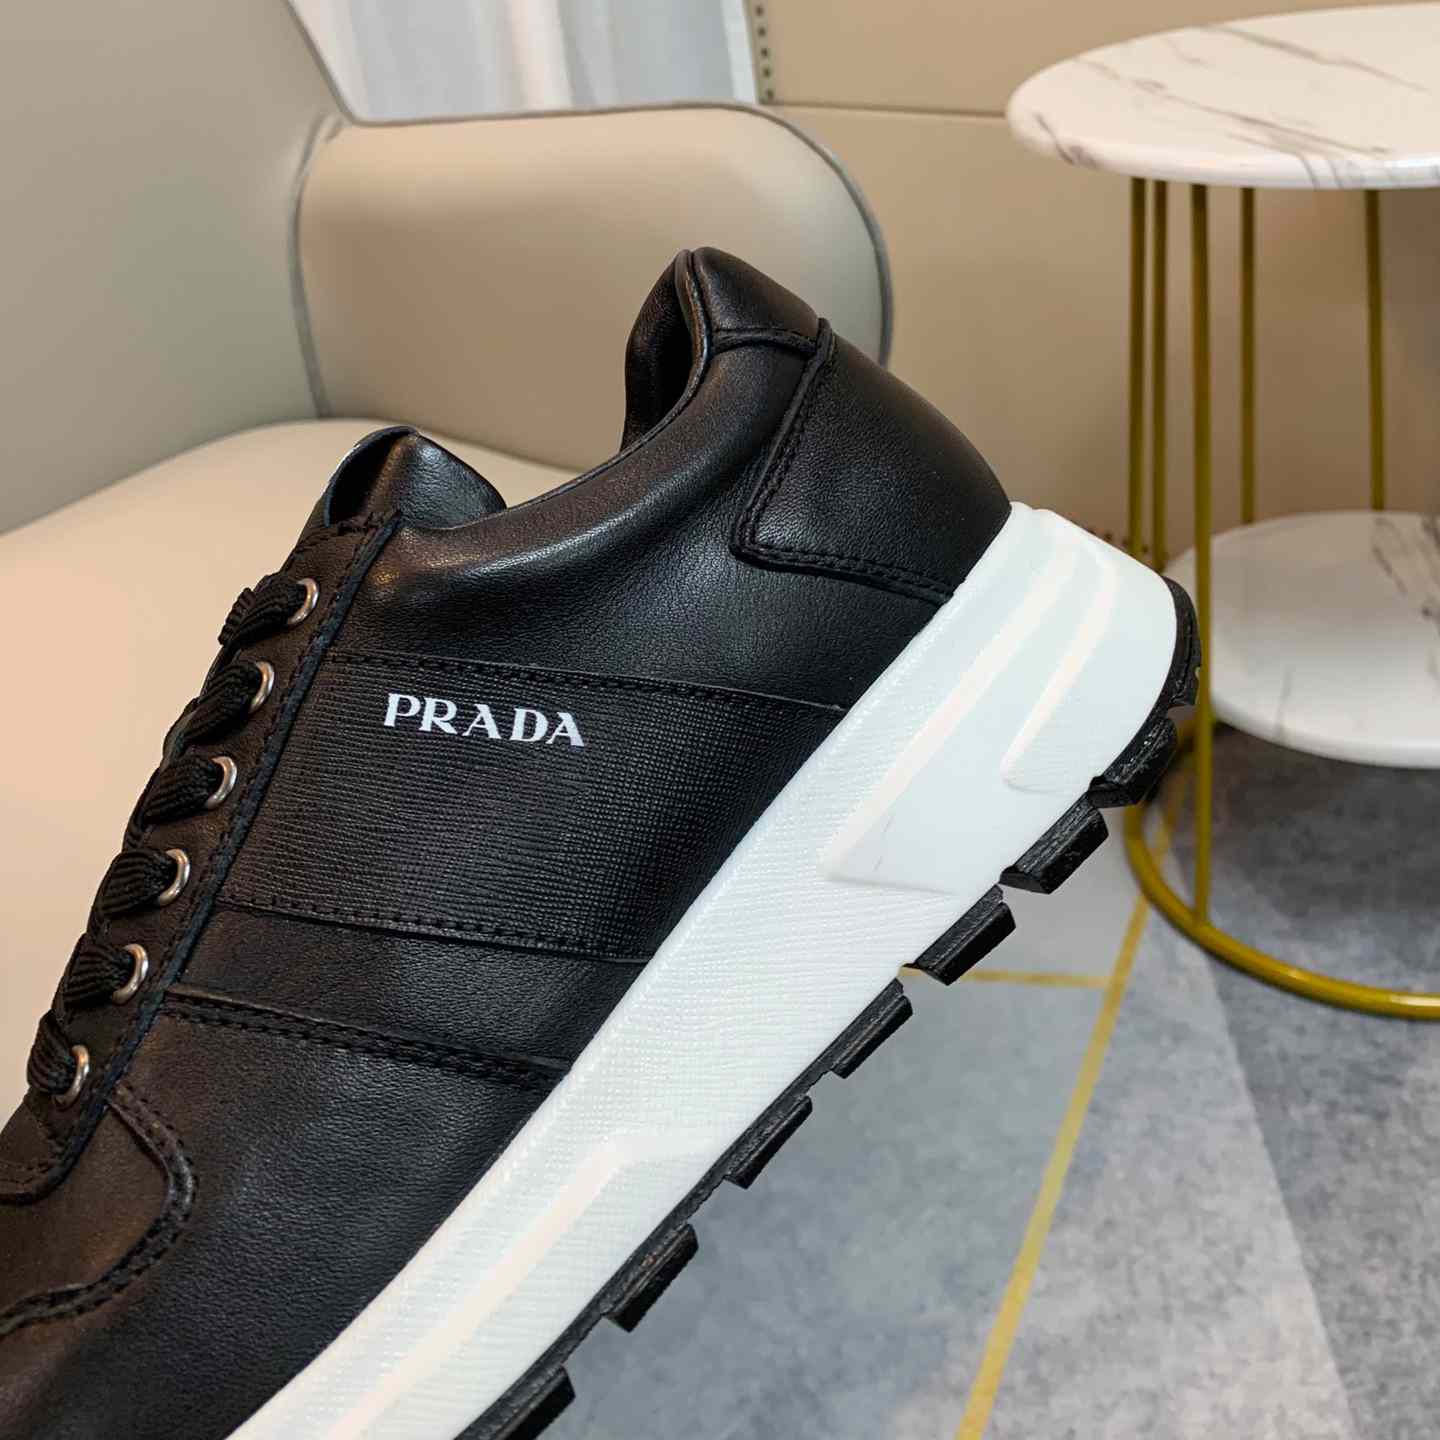 Prada Prax 01 Sneakers - DesignerGu